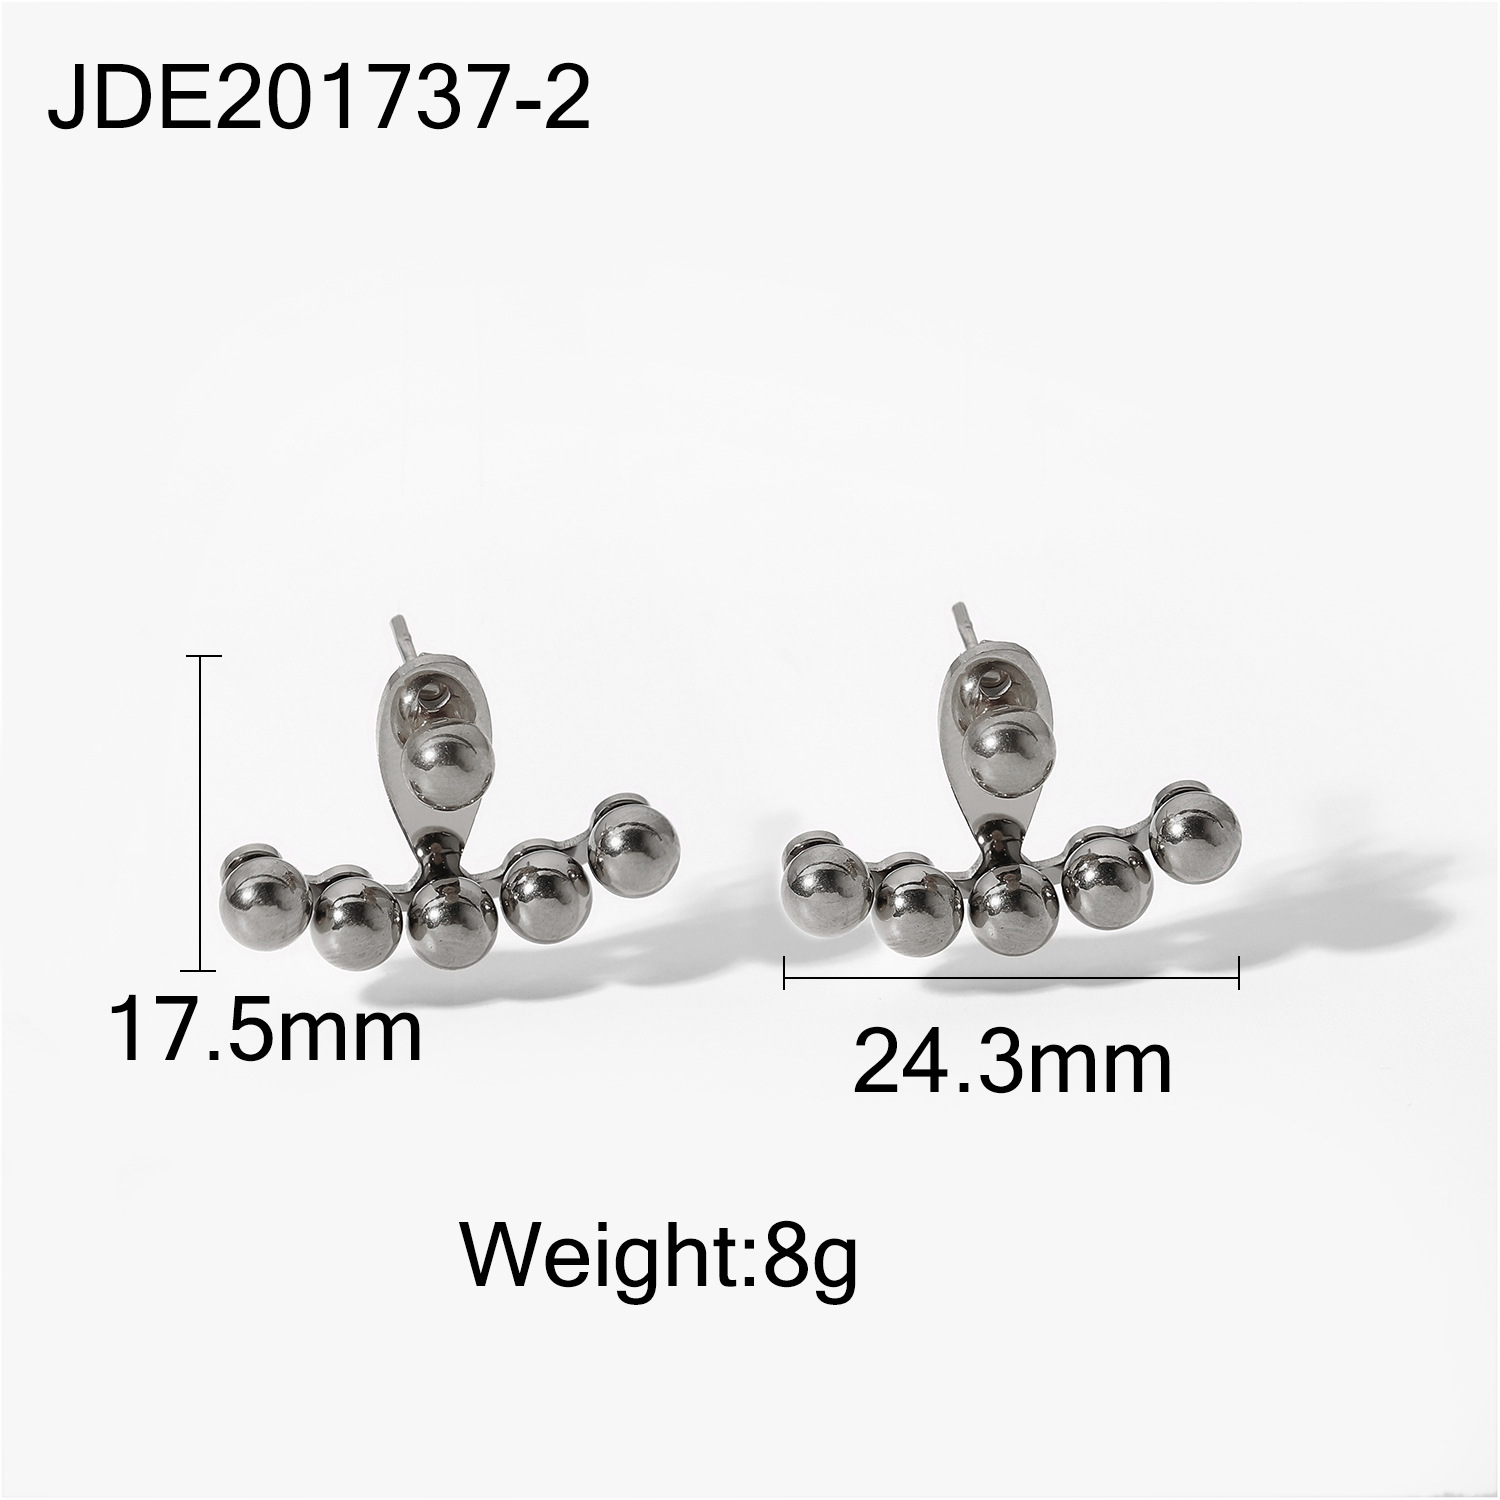 JDE201737-2